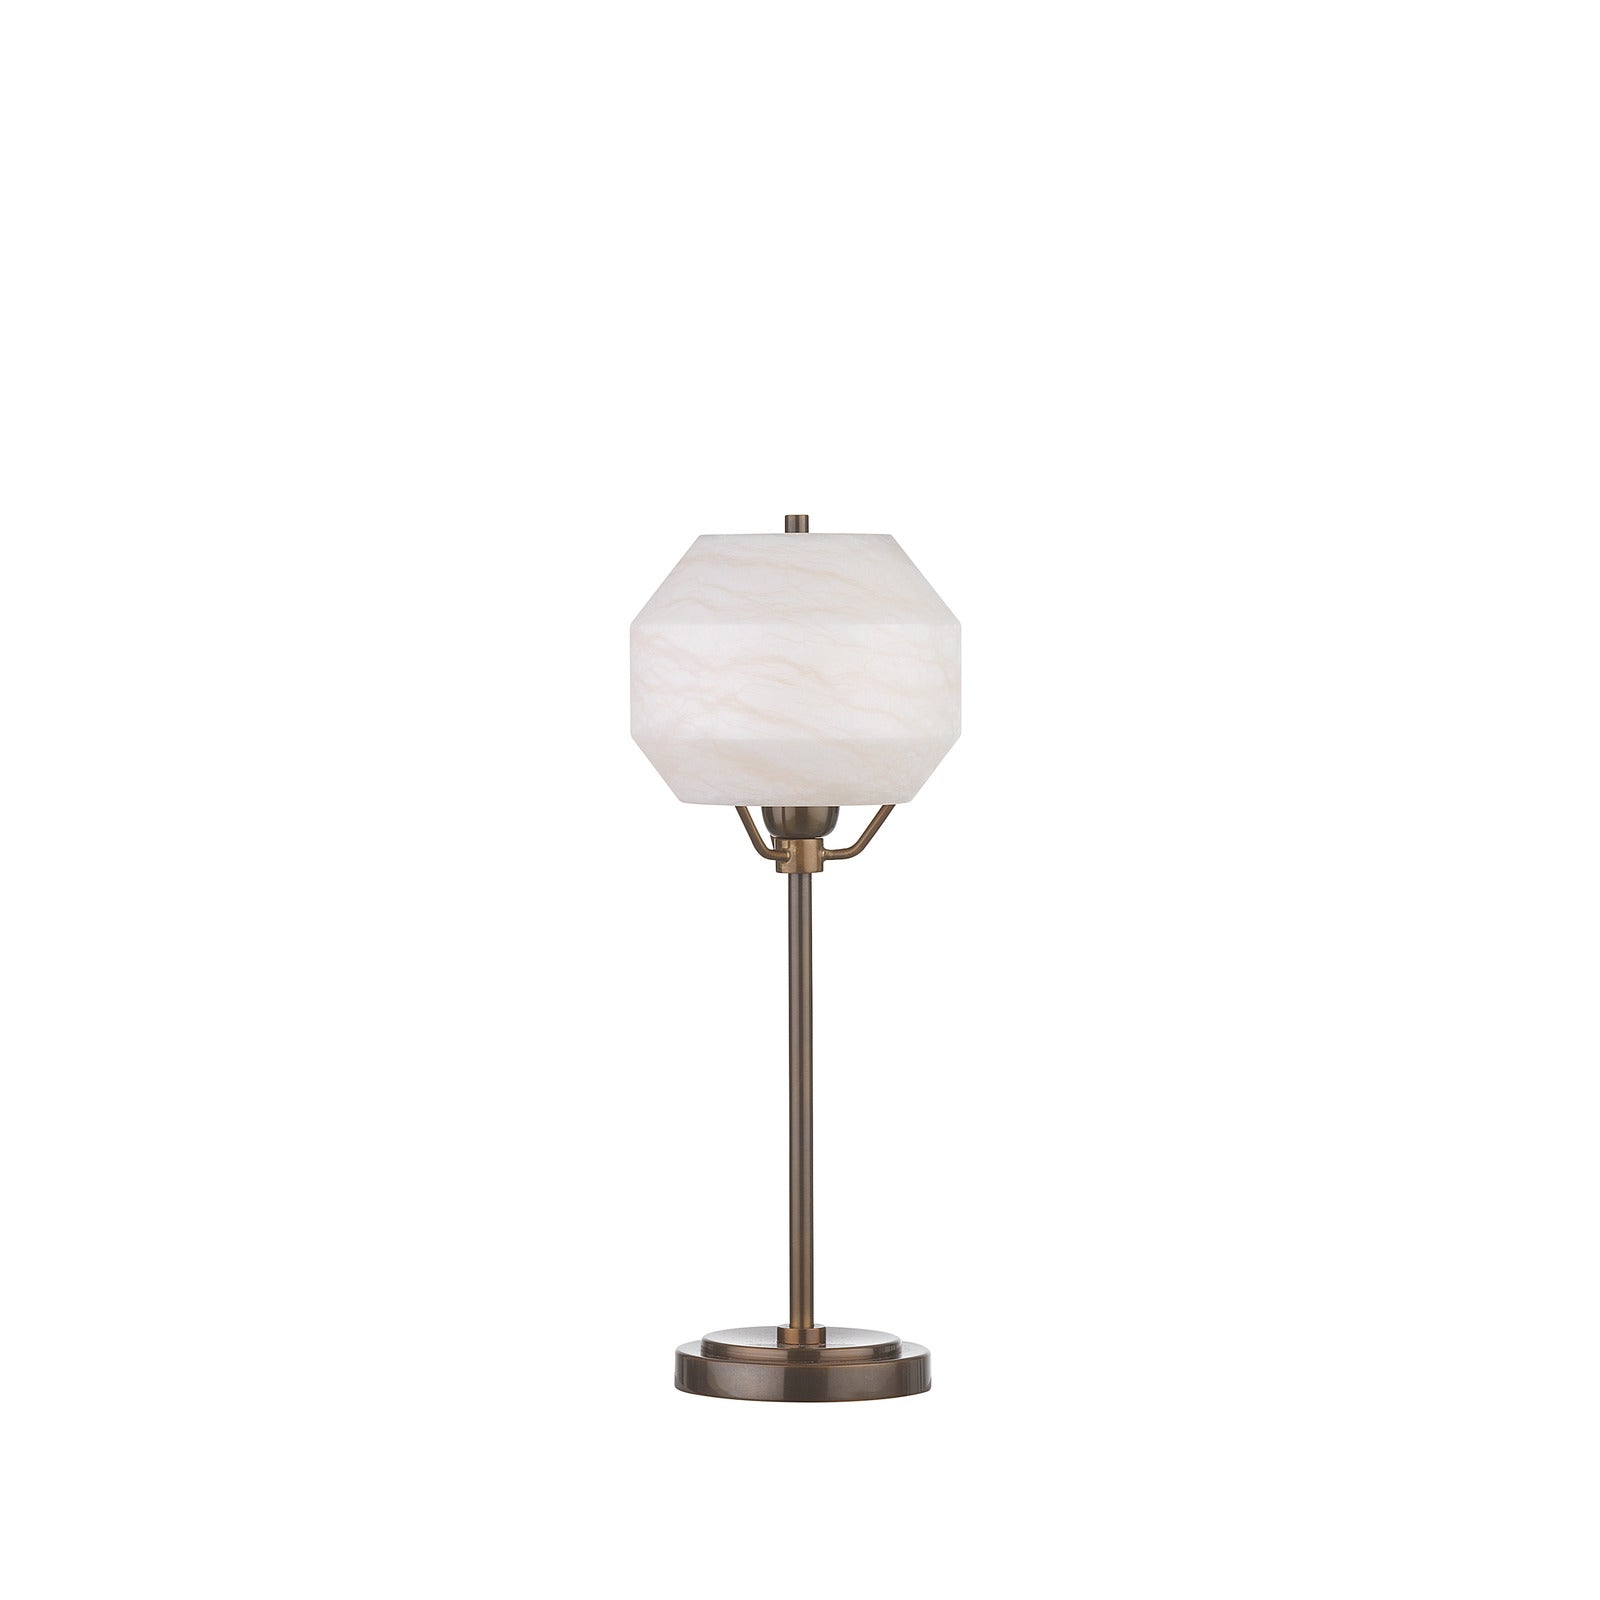 Caldera Table Lamp Medium